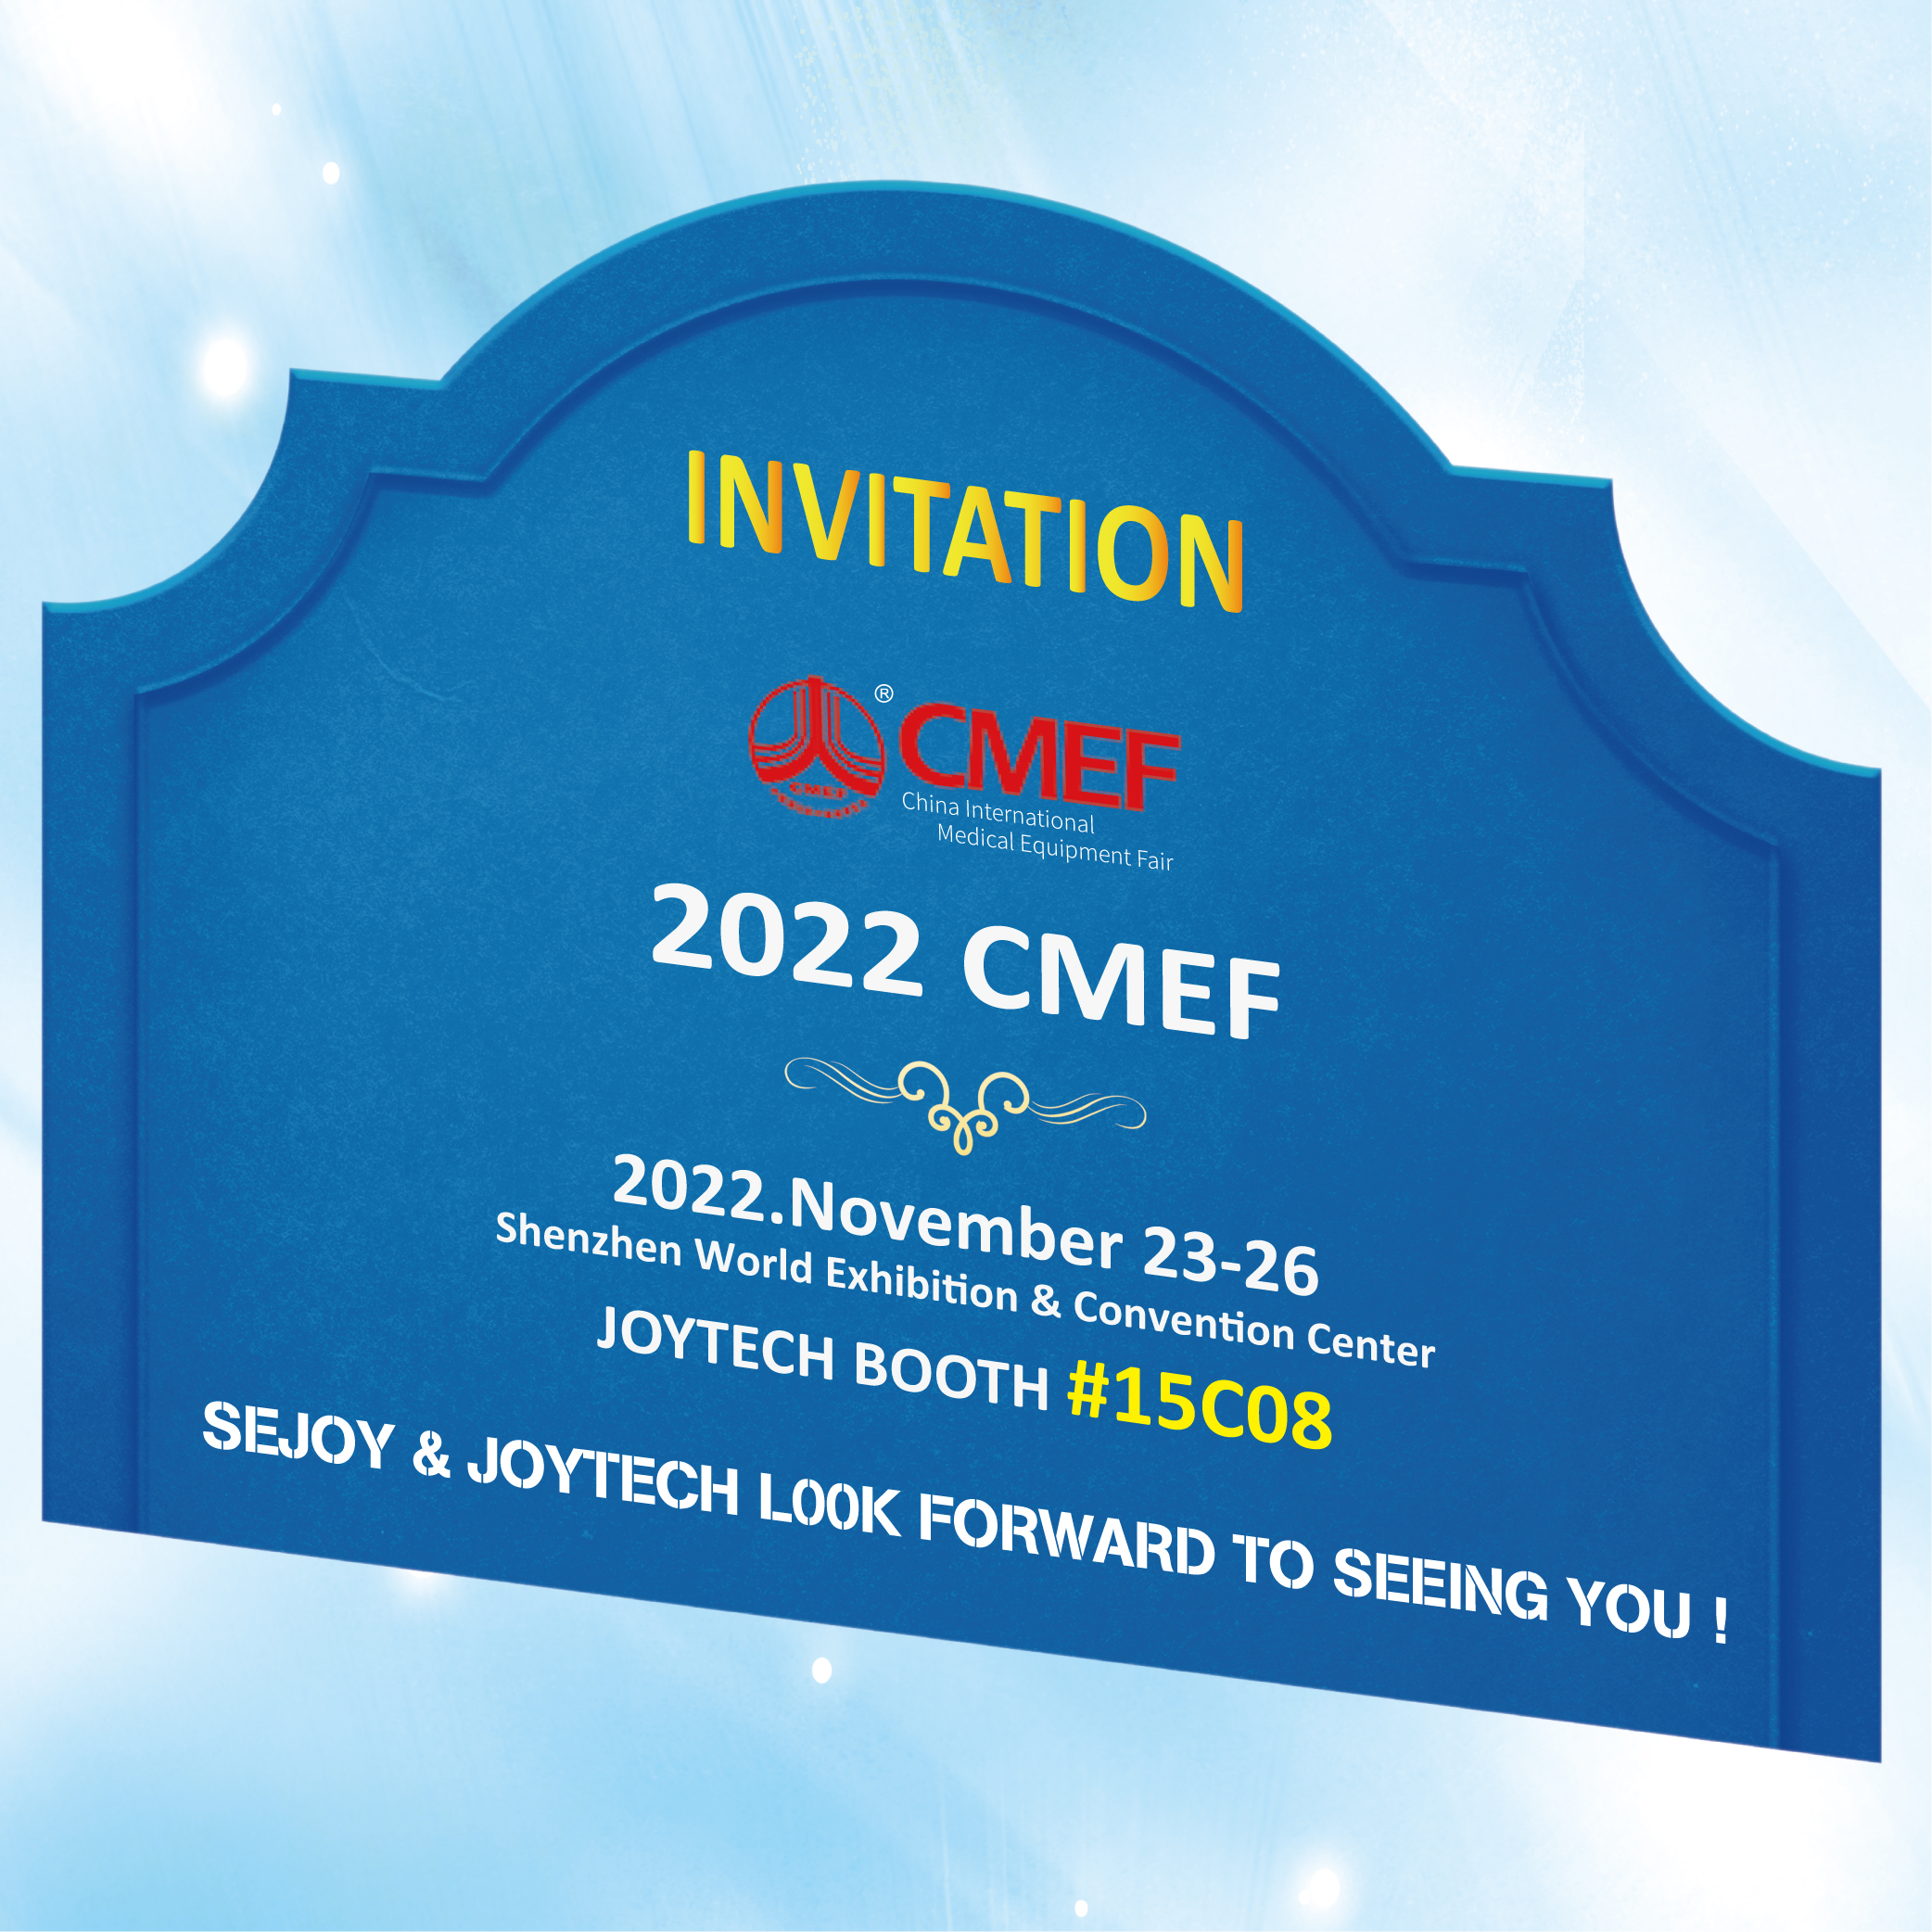 Tere tulemast CMEF 2022 Joytech Boothi